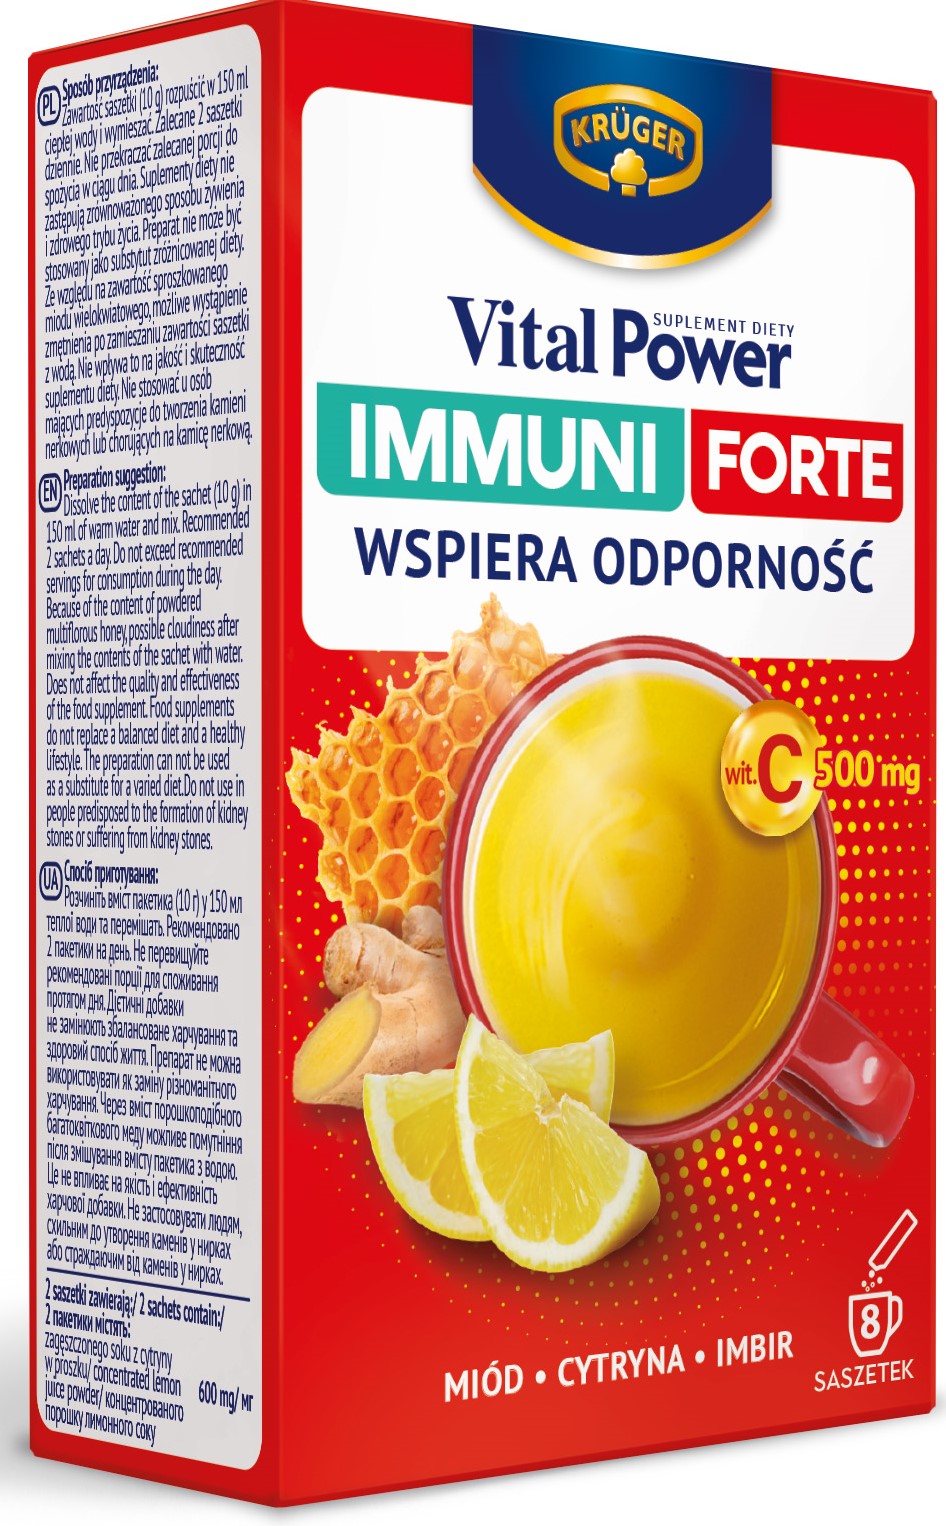 Vital Power Immuni Forte  Wspiera odporność, Miód, cytryna, Imbir, Witamina  C